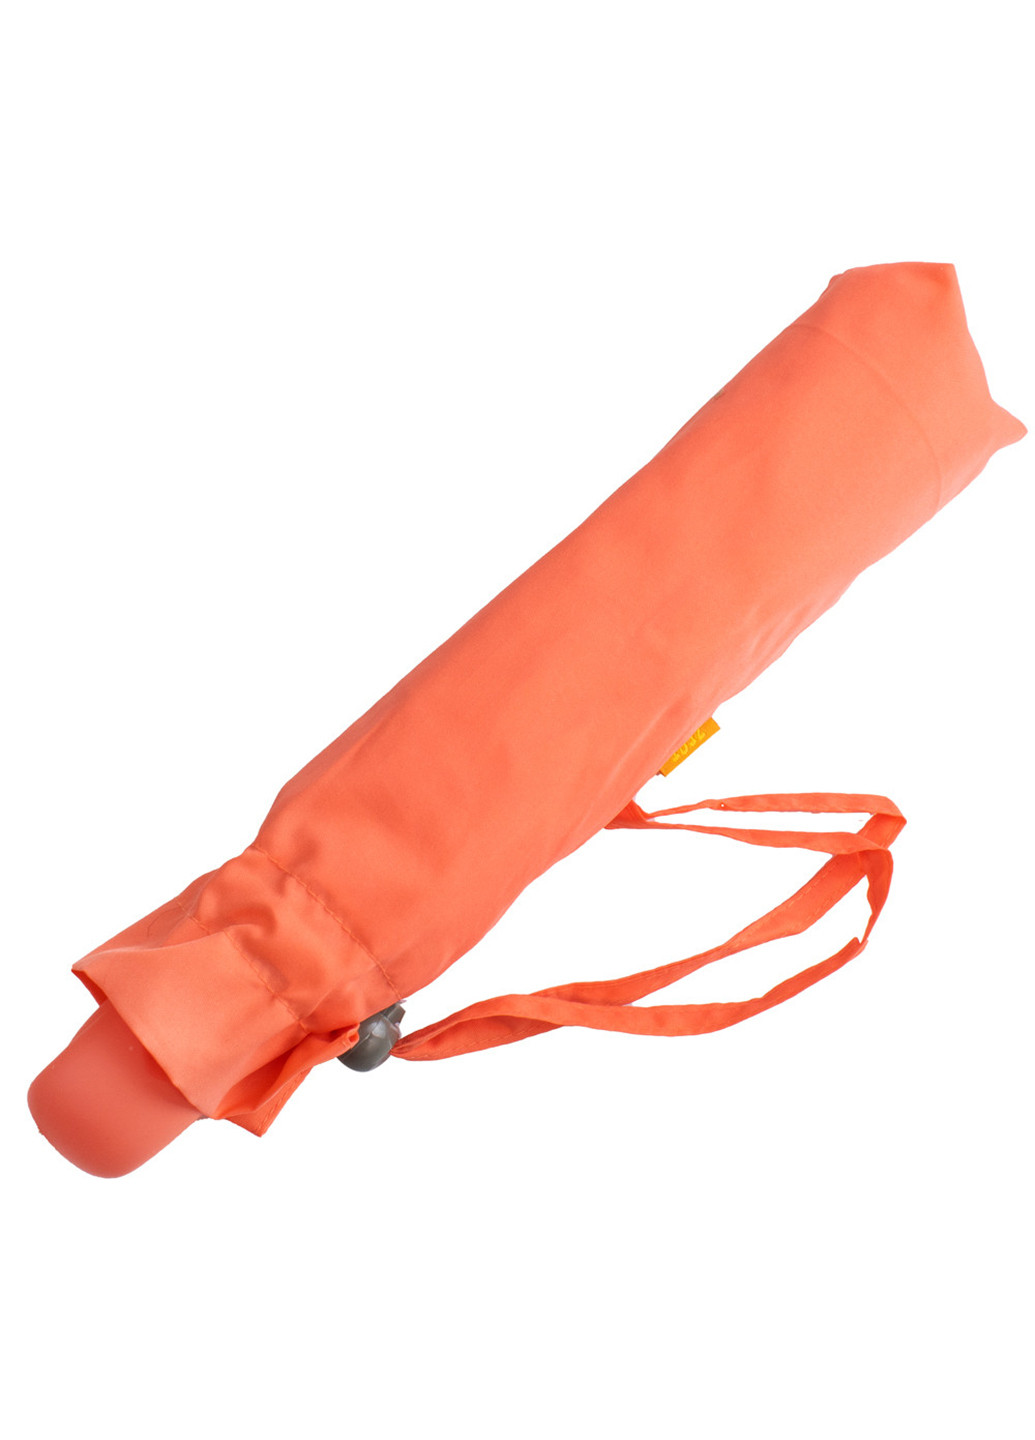 Женский складной зонт автомат 103 см Zest (255709482)